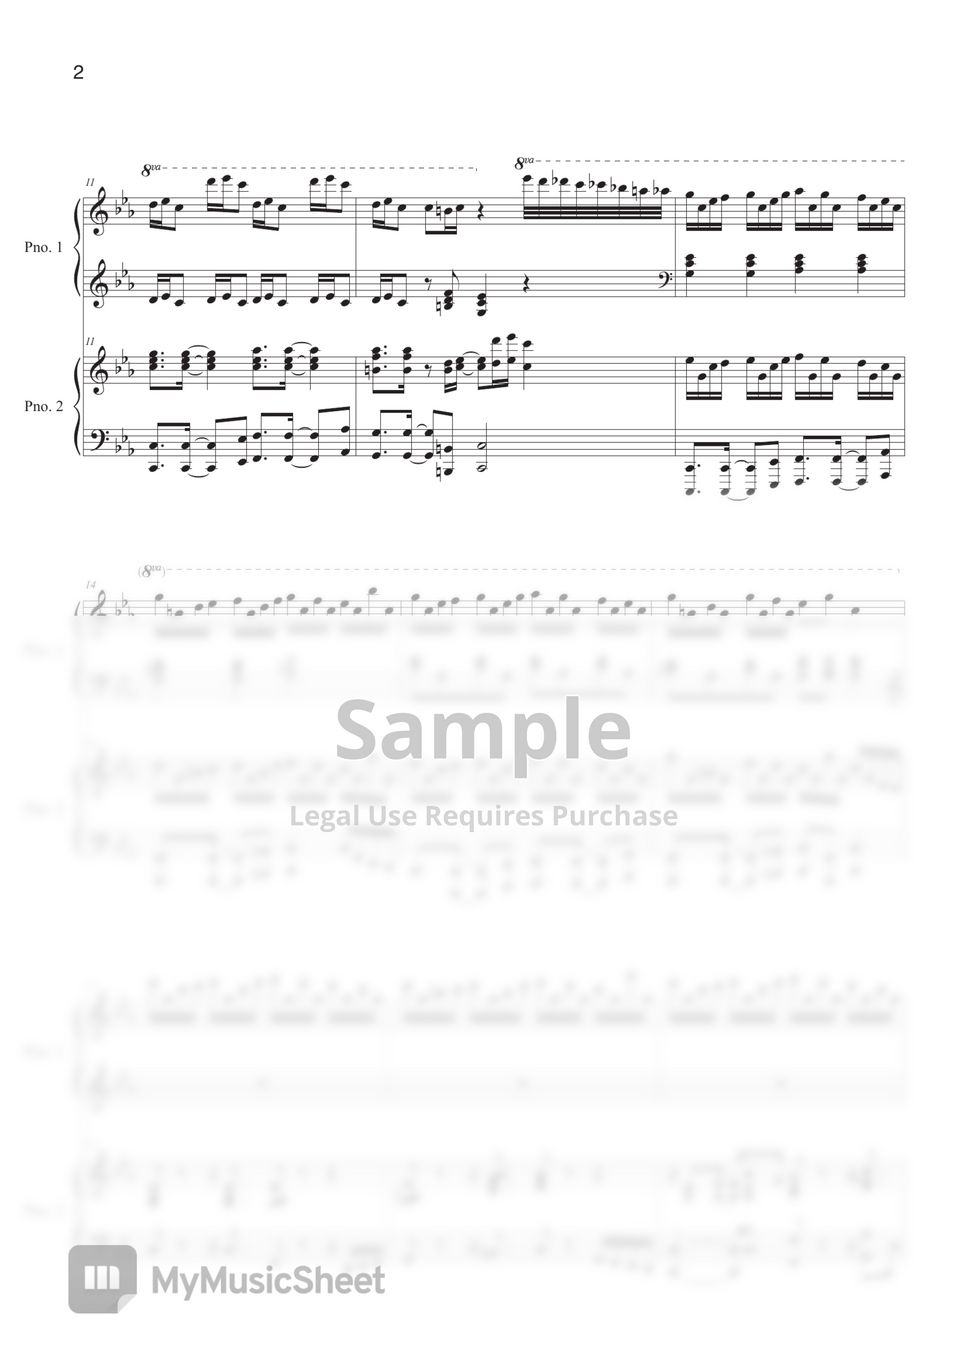 Maksim Mrvica - Croatian Rhapsody (4Hands Piano) by Bella&Lucas